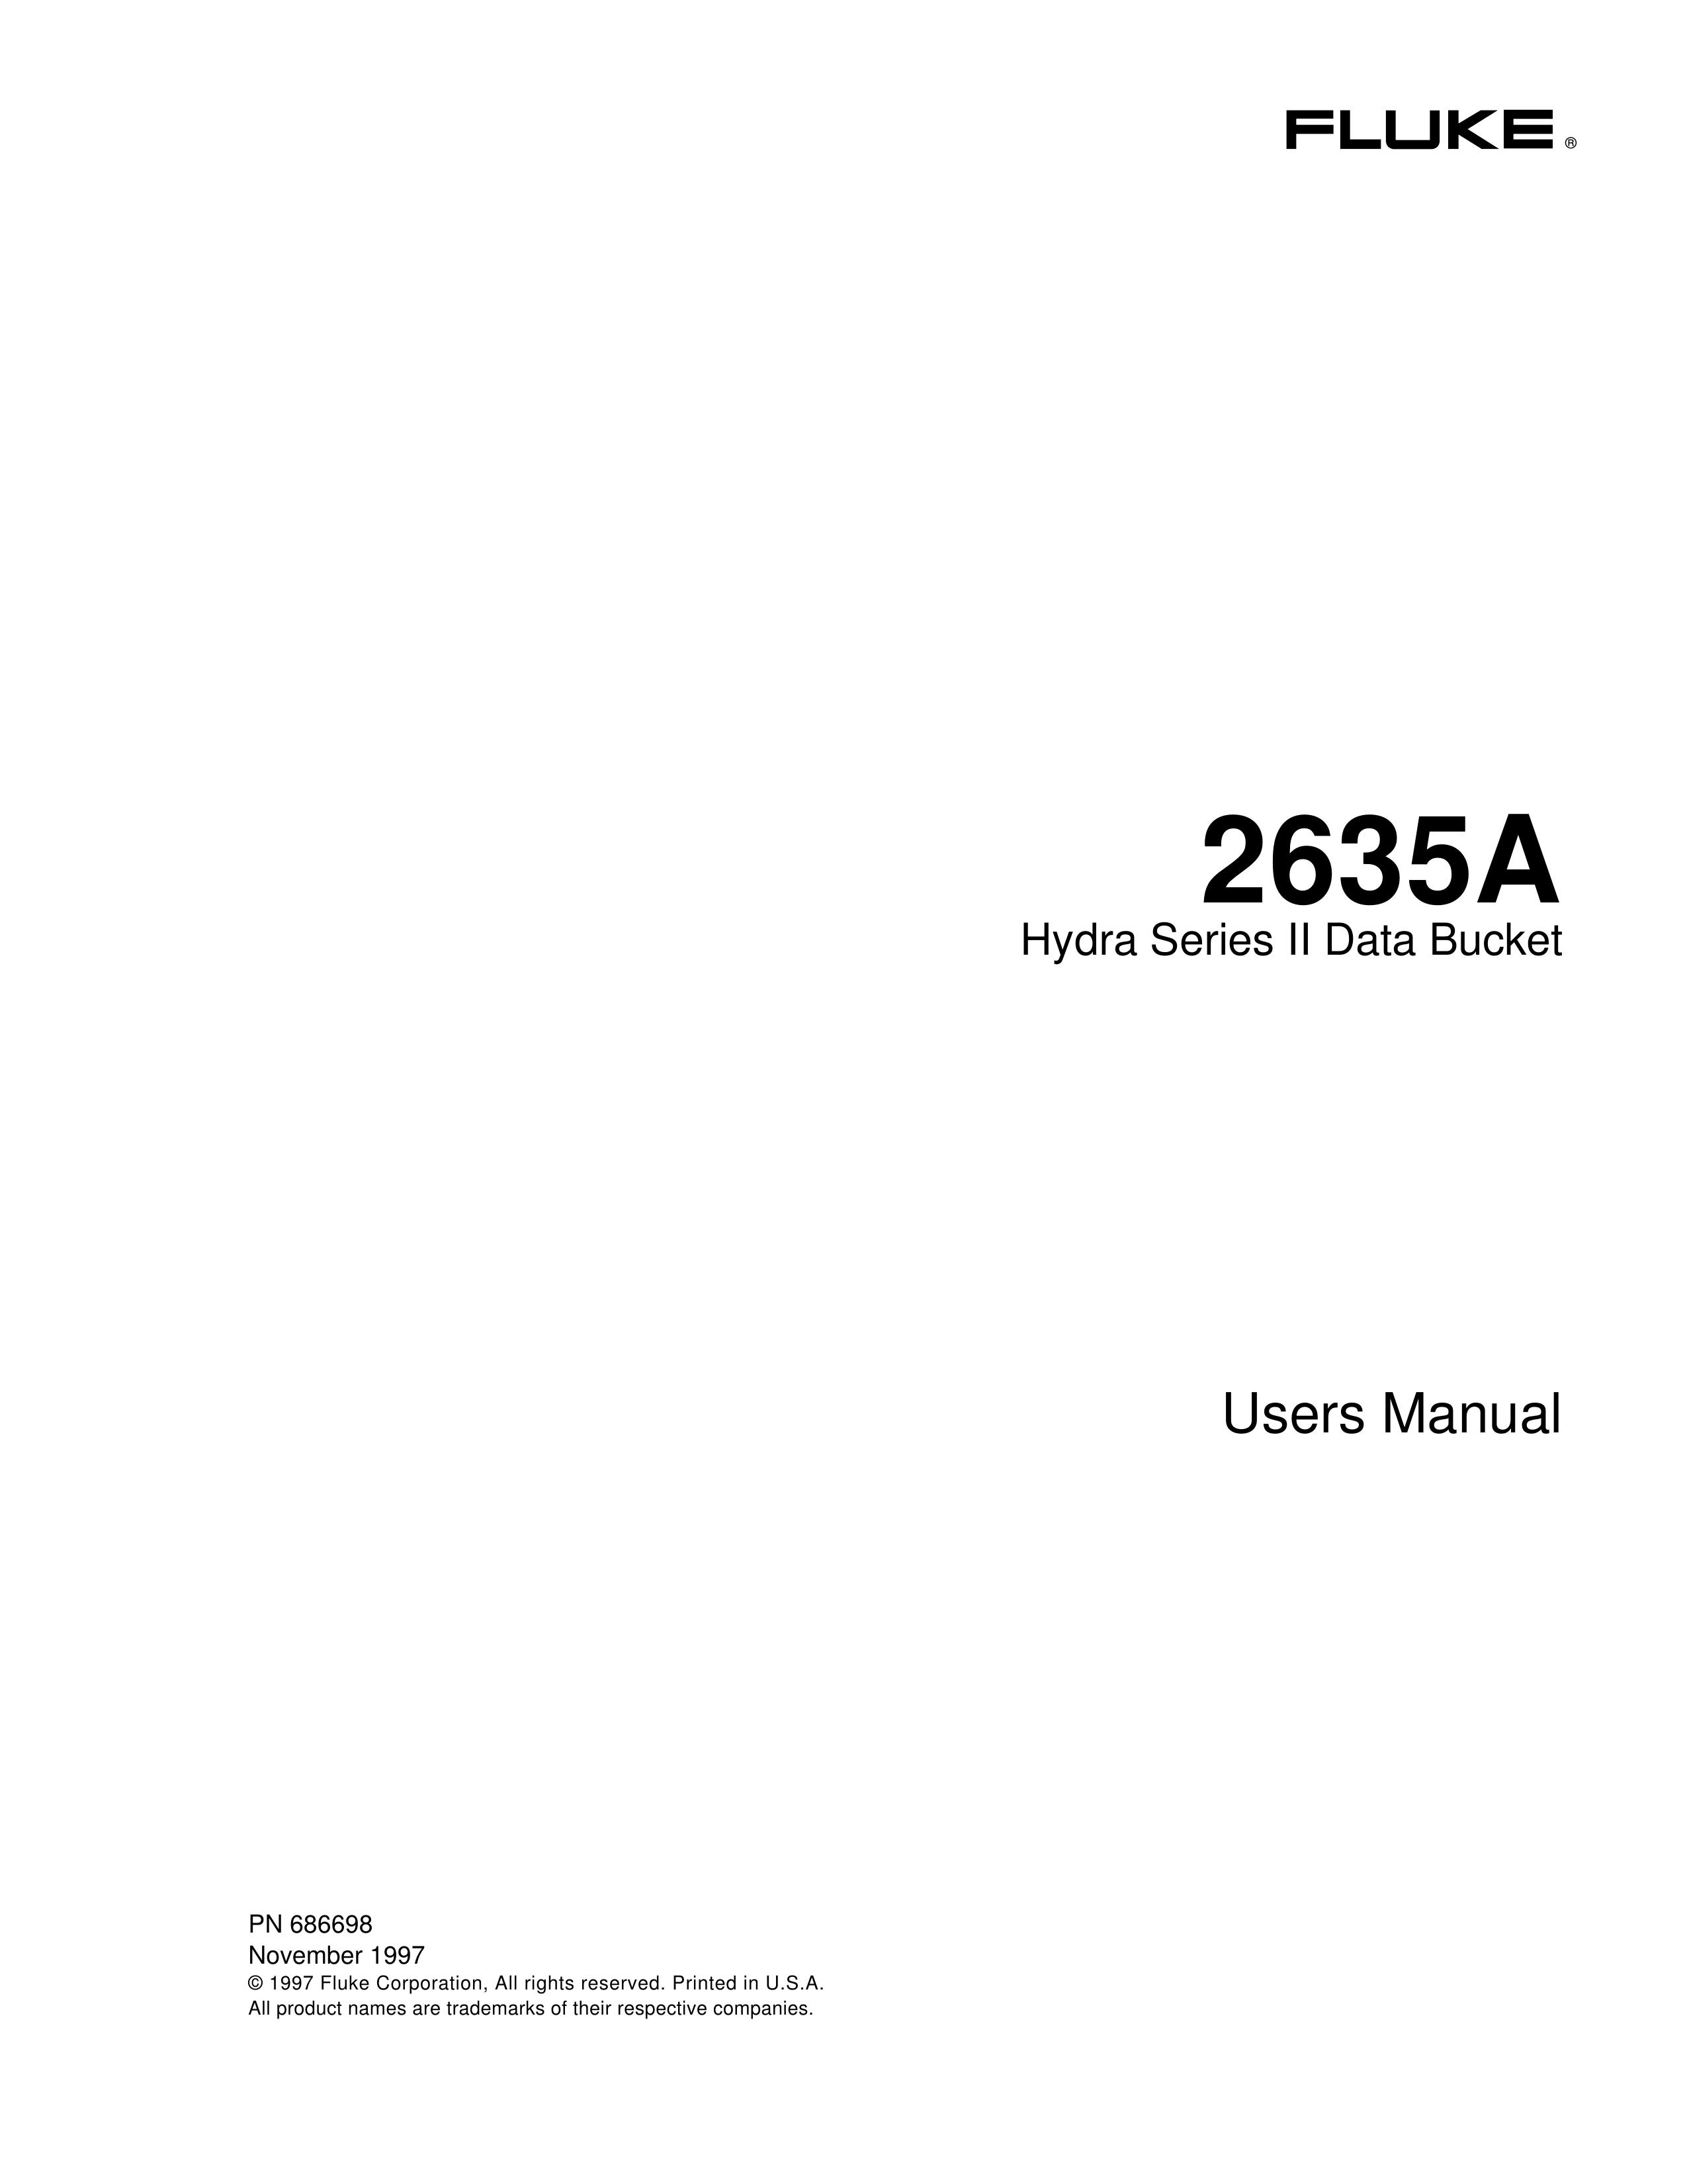 Fluke 2635A Lawn Mower User Manual